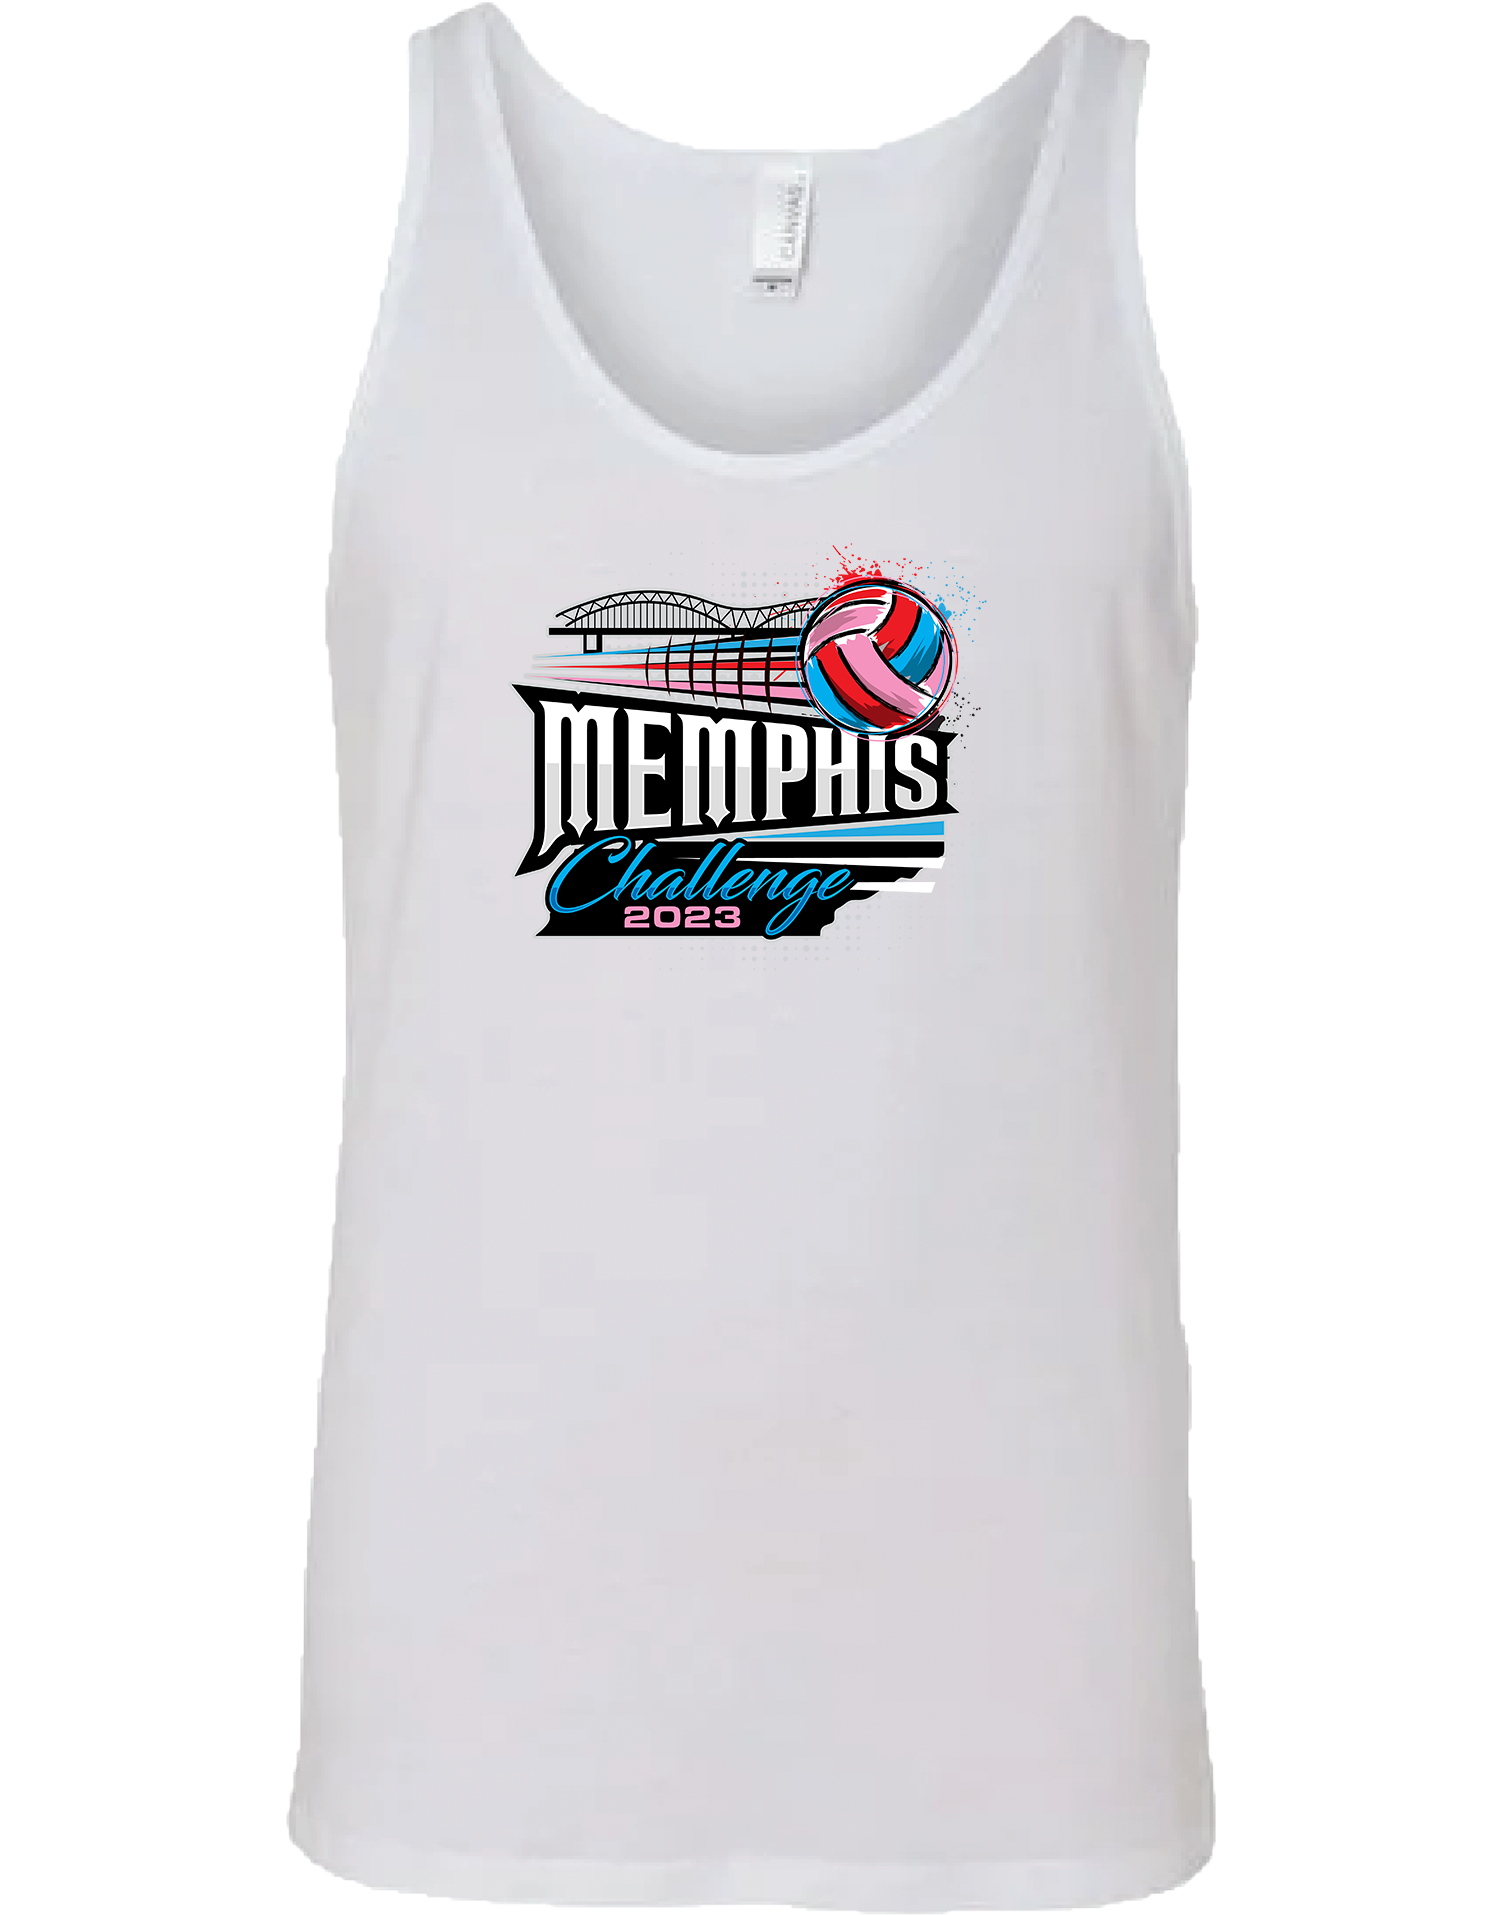 TANK TOP - 2023 Memphis Challenge